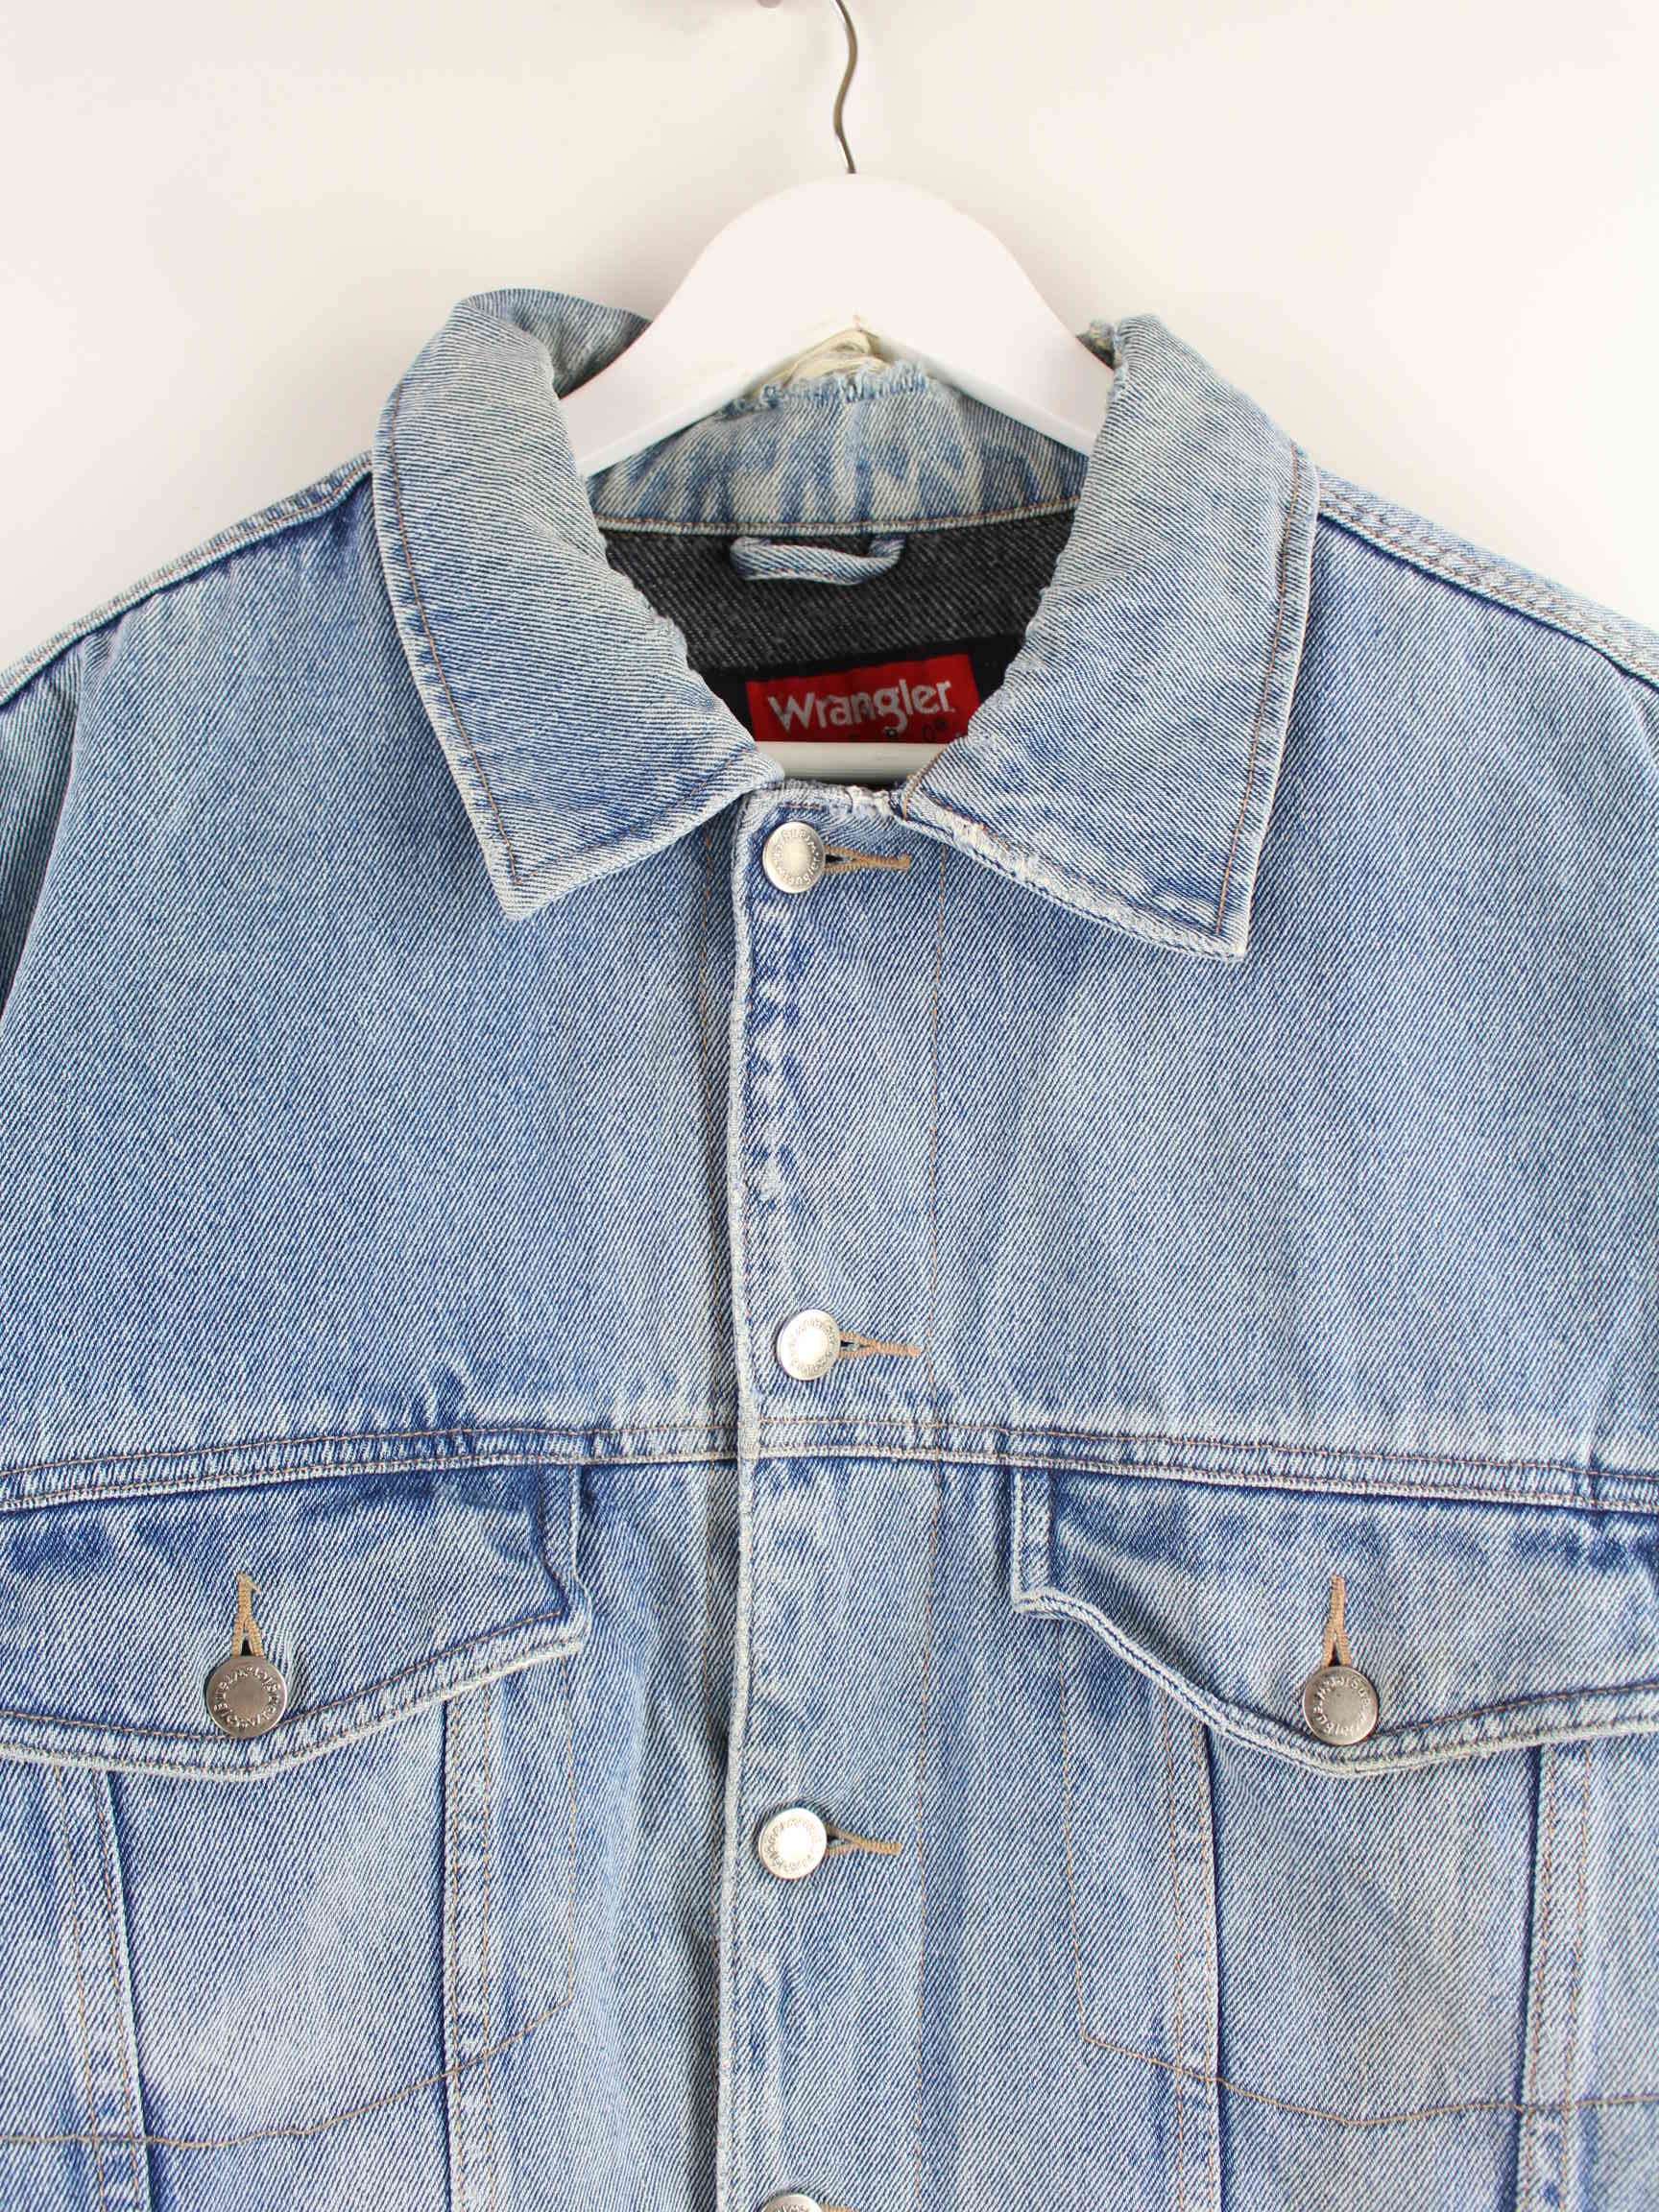 Wrangler 90s Gefütterte Jeans Jacke Blau L (detail image 1)